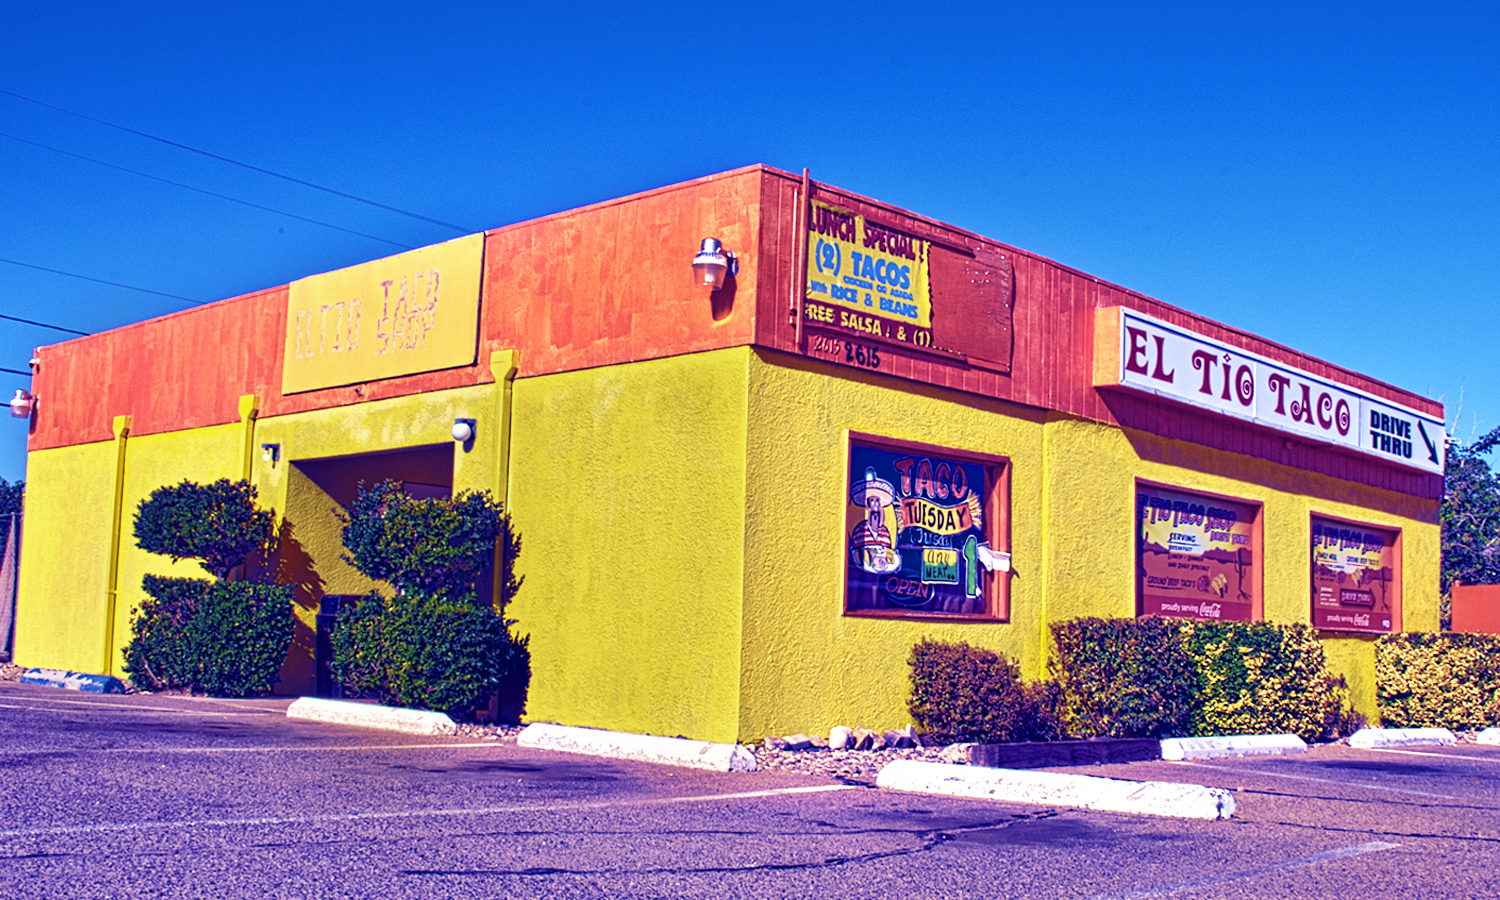 El Tio Taco Shop